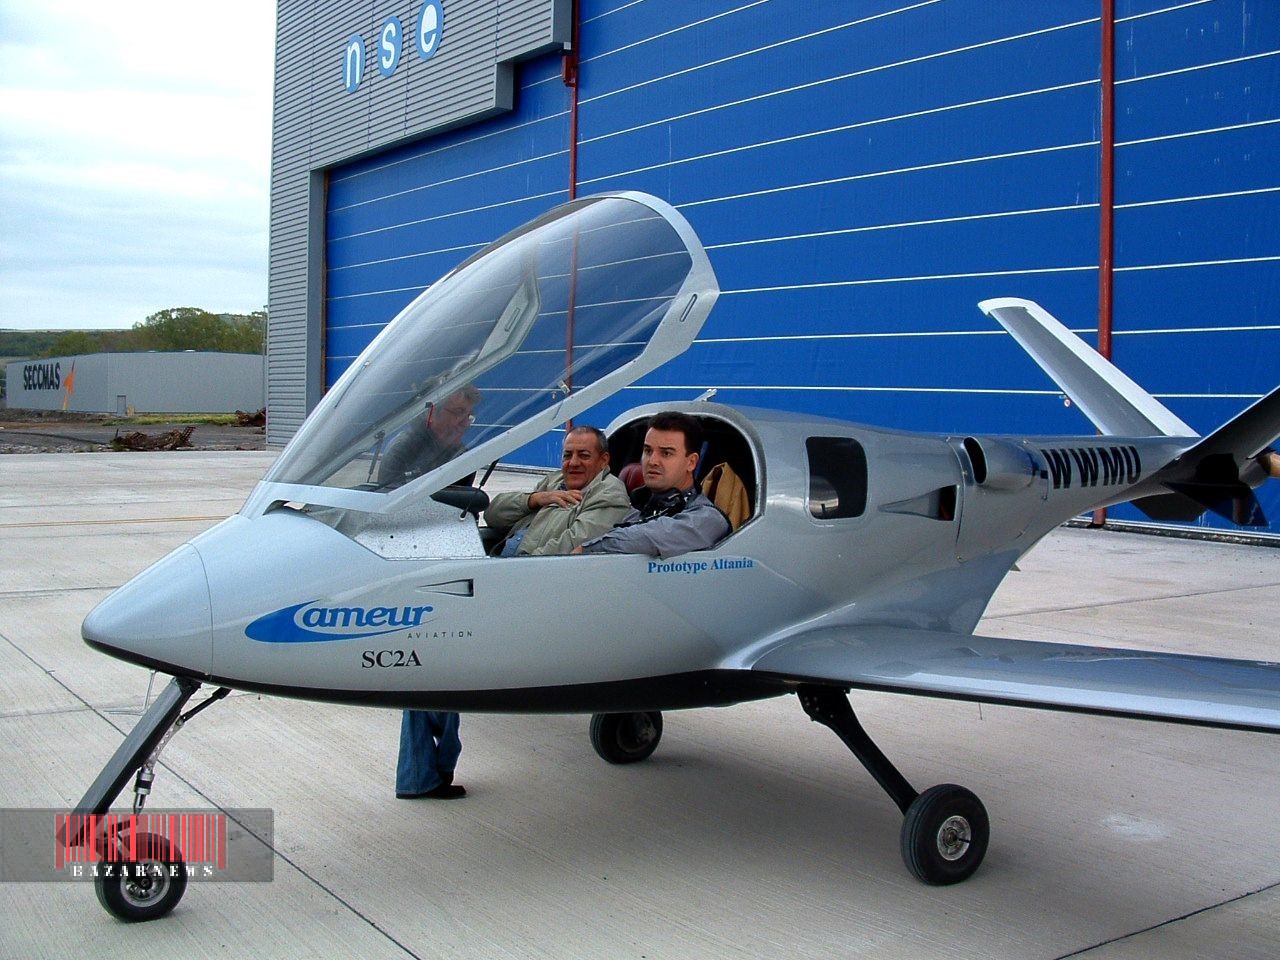 در آینده اقدام به خرید بلیط هواپیما نکنید و برای خود هواپیما شخصی بسازید